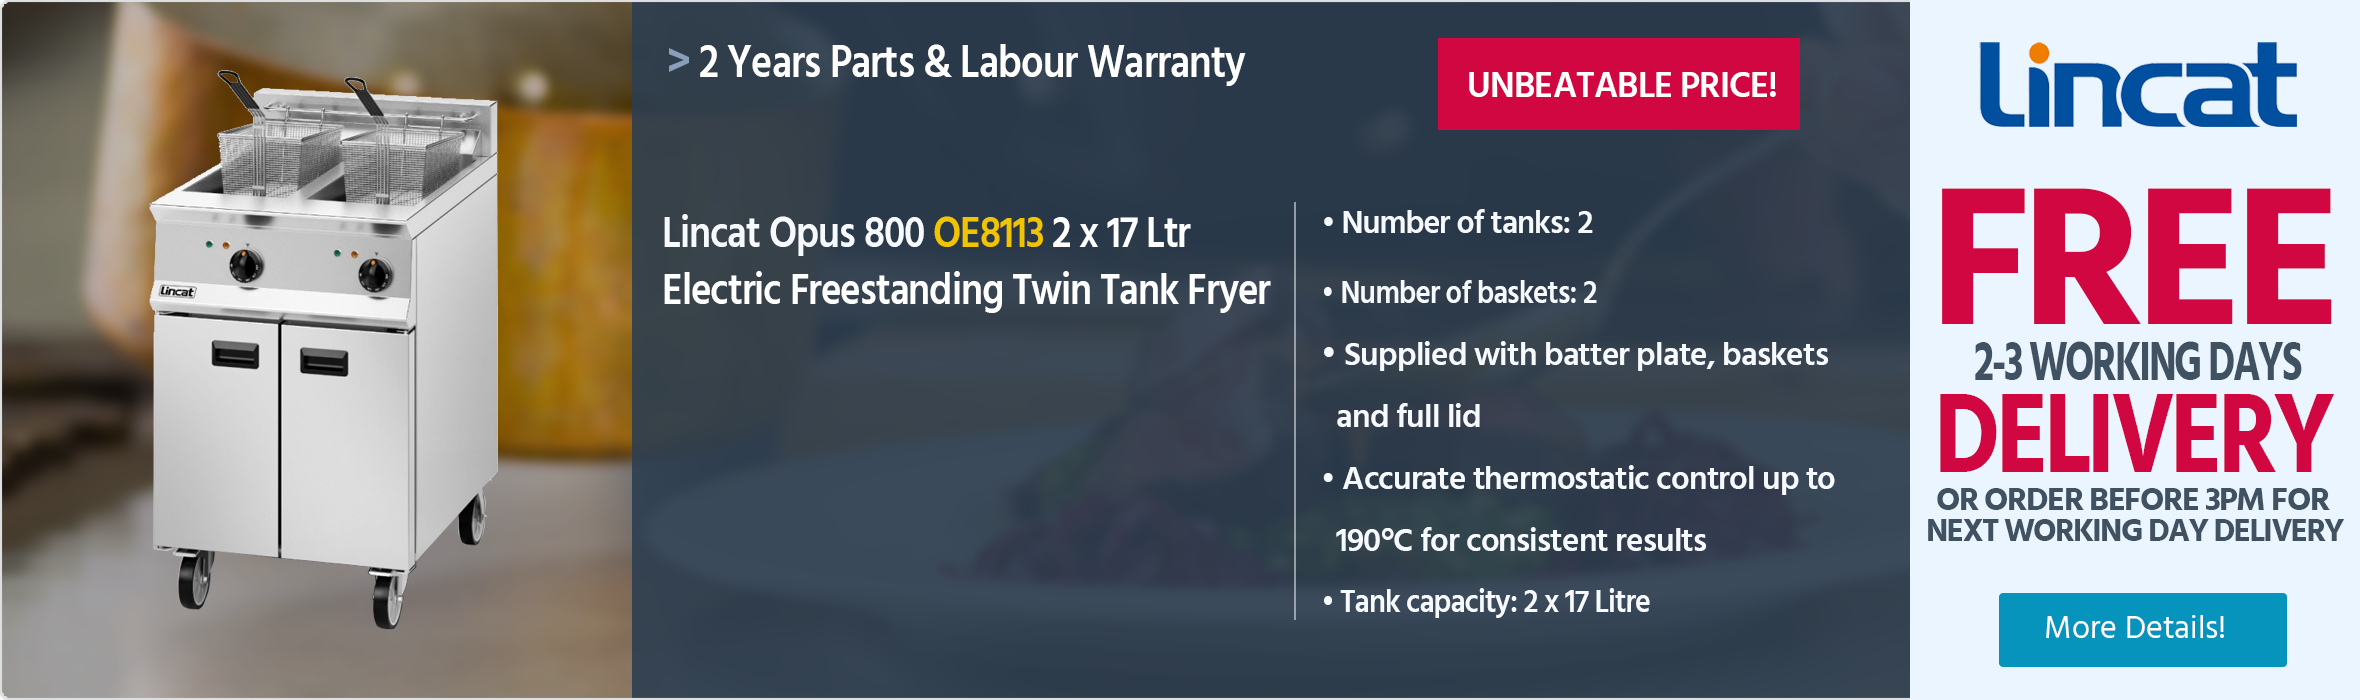 Lincat Opus 800 OE8113 2 x 17 Ltr Electric Freestanding Twin Tank Fryer (2 x Baskets)